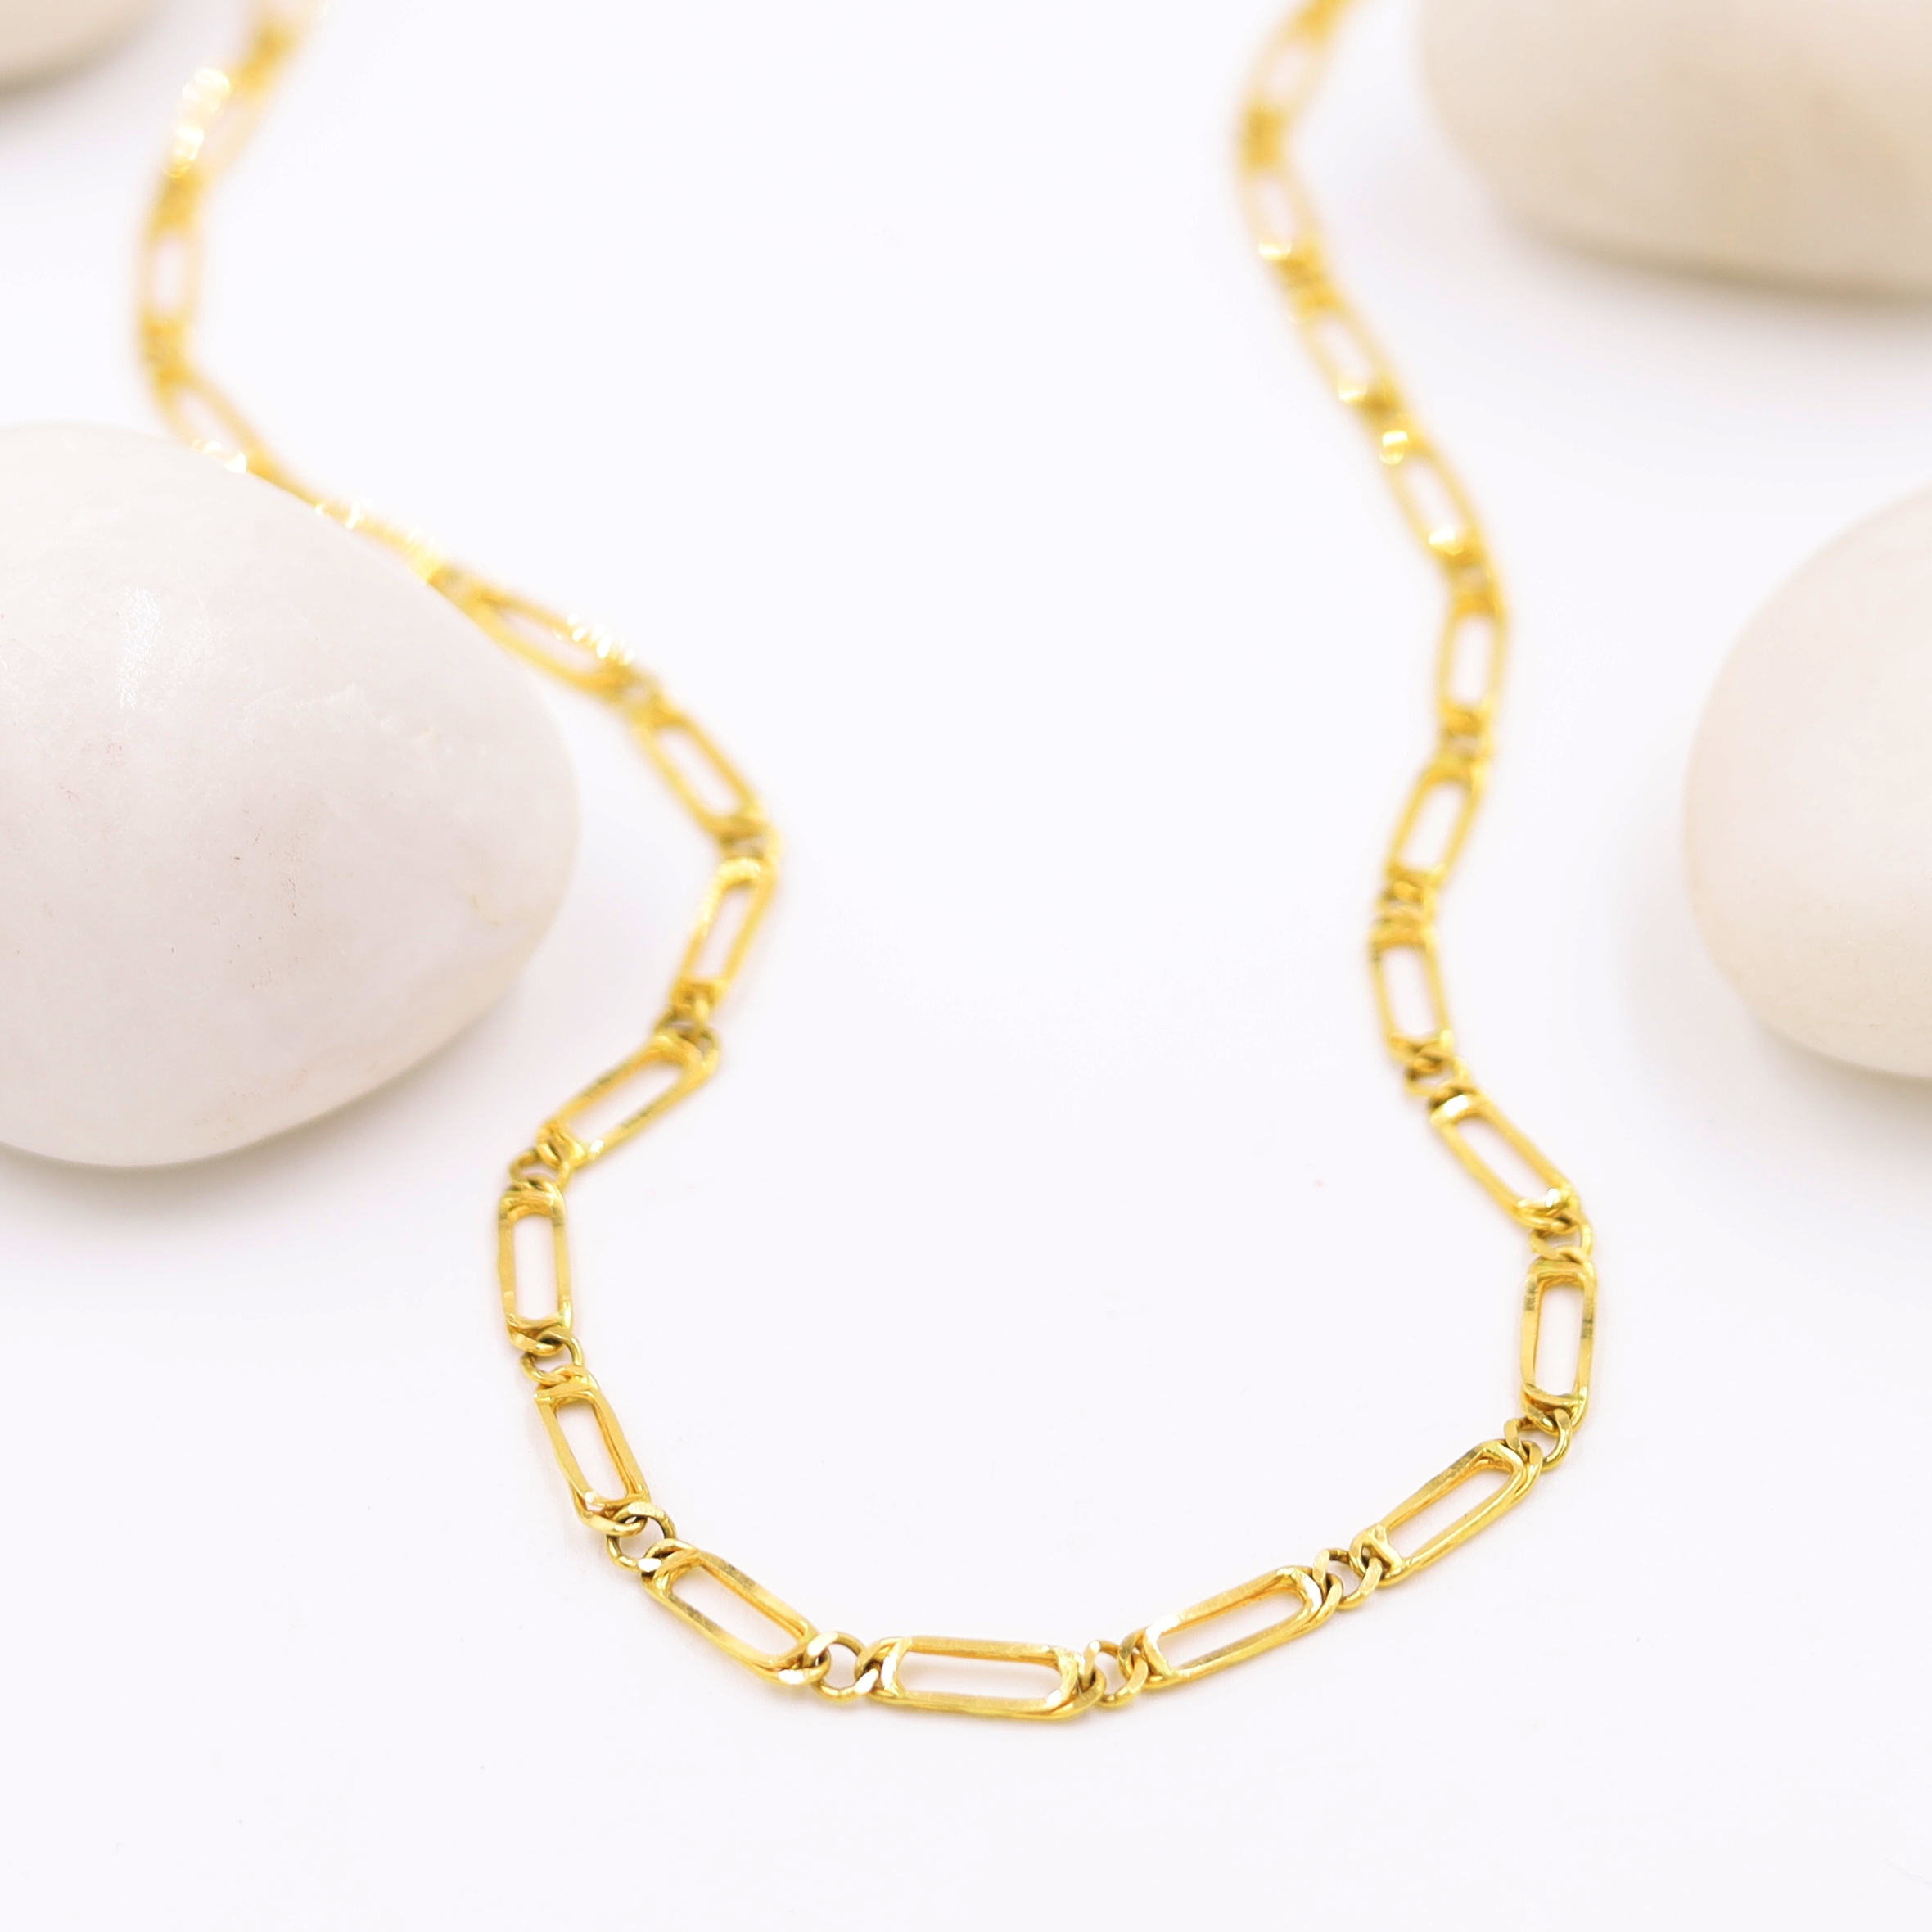 Handmade Link Gold Chain For Men